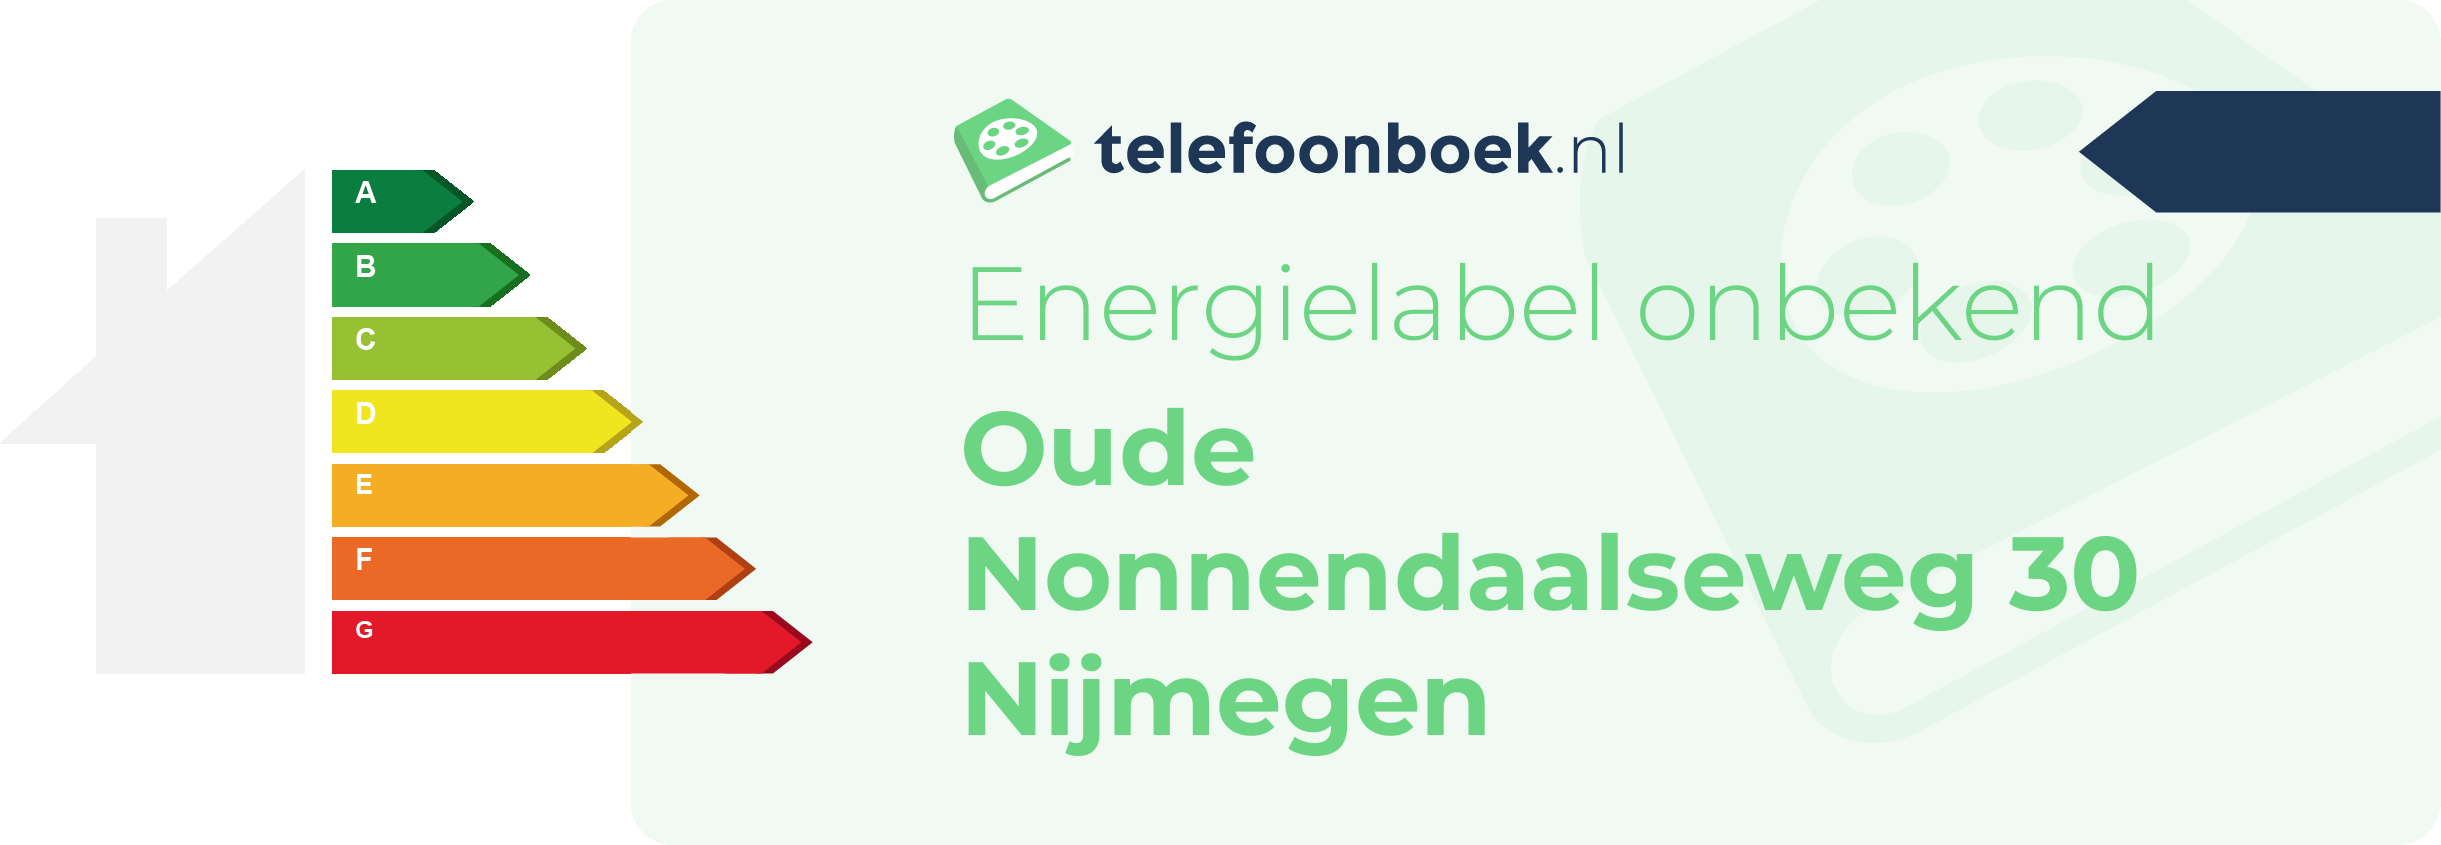 Energielabel Oude Nonnendaalseweg 30 Nijmegen